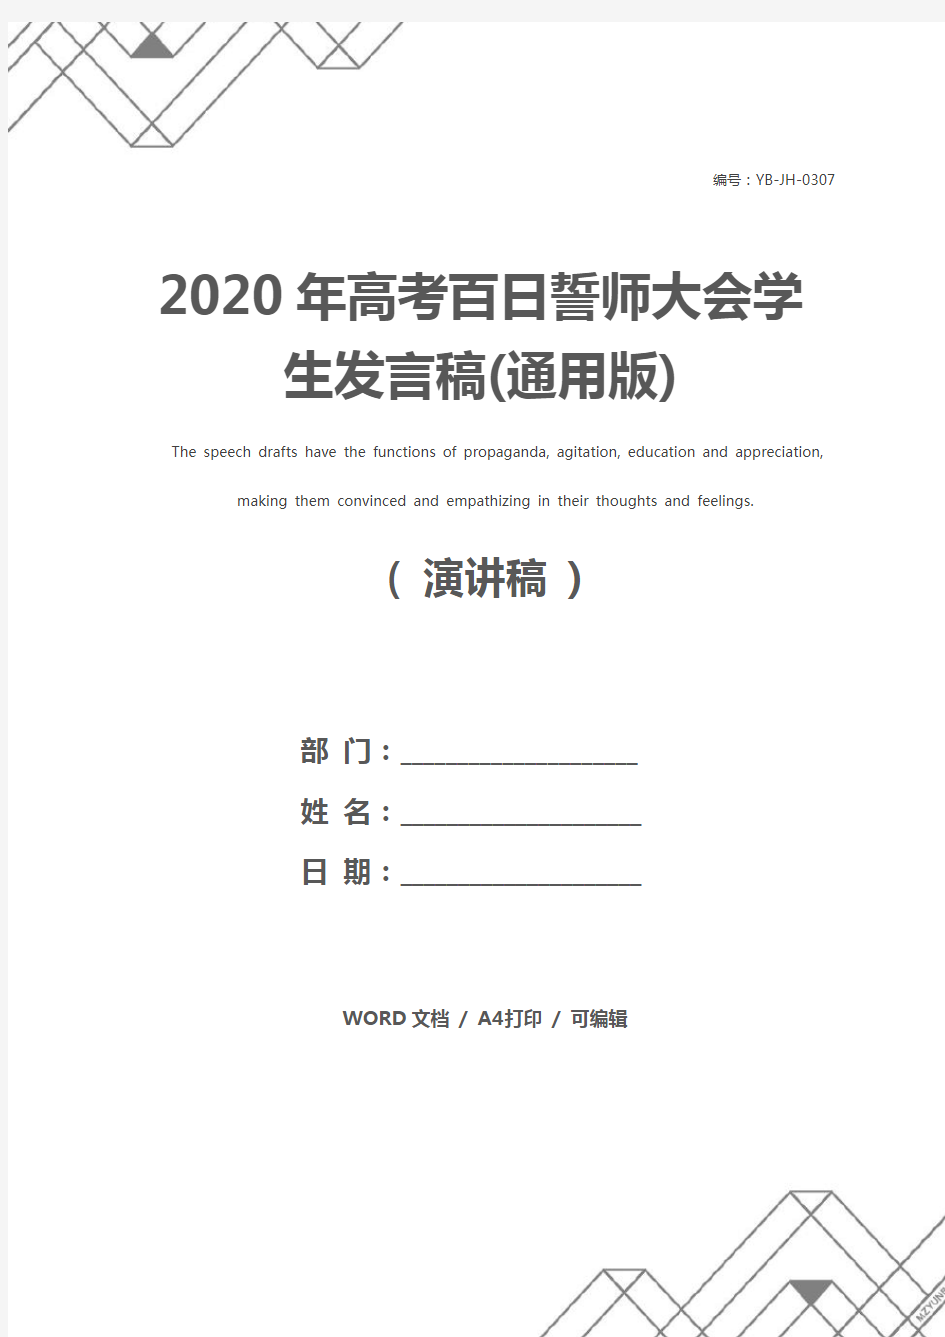 2020年高考百日誓师大会学生发言稿(通用版)